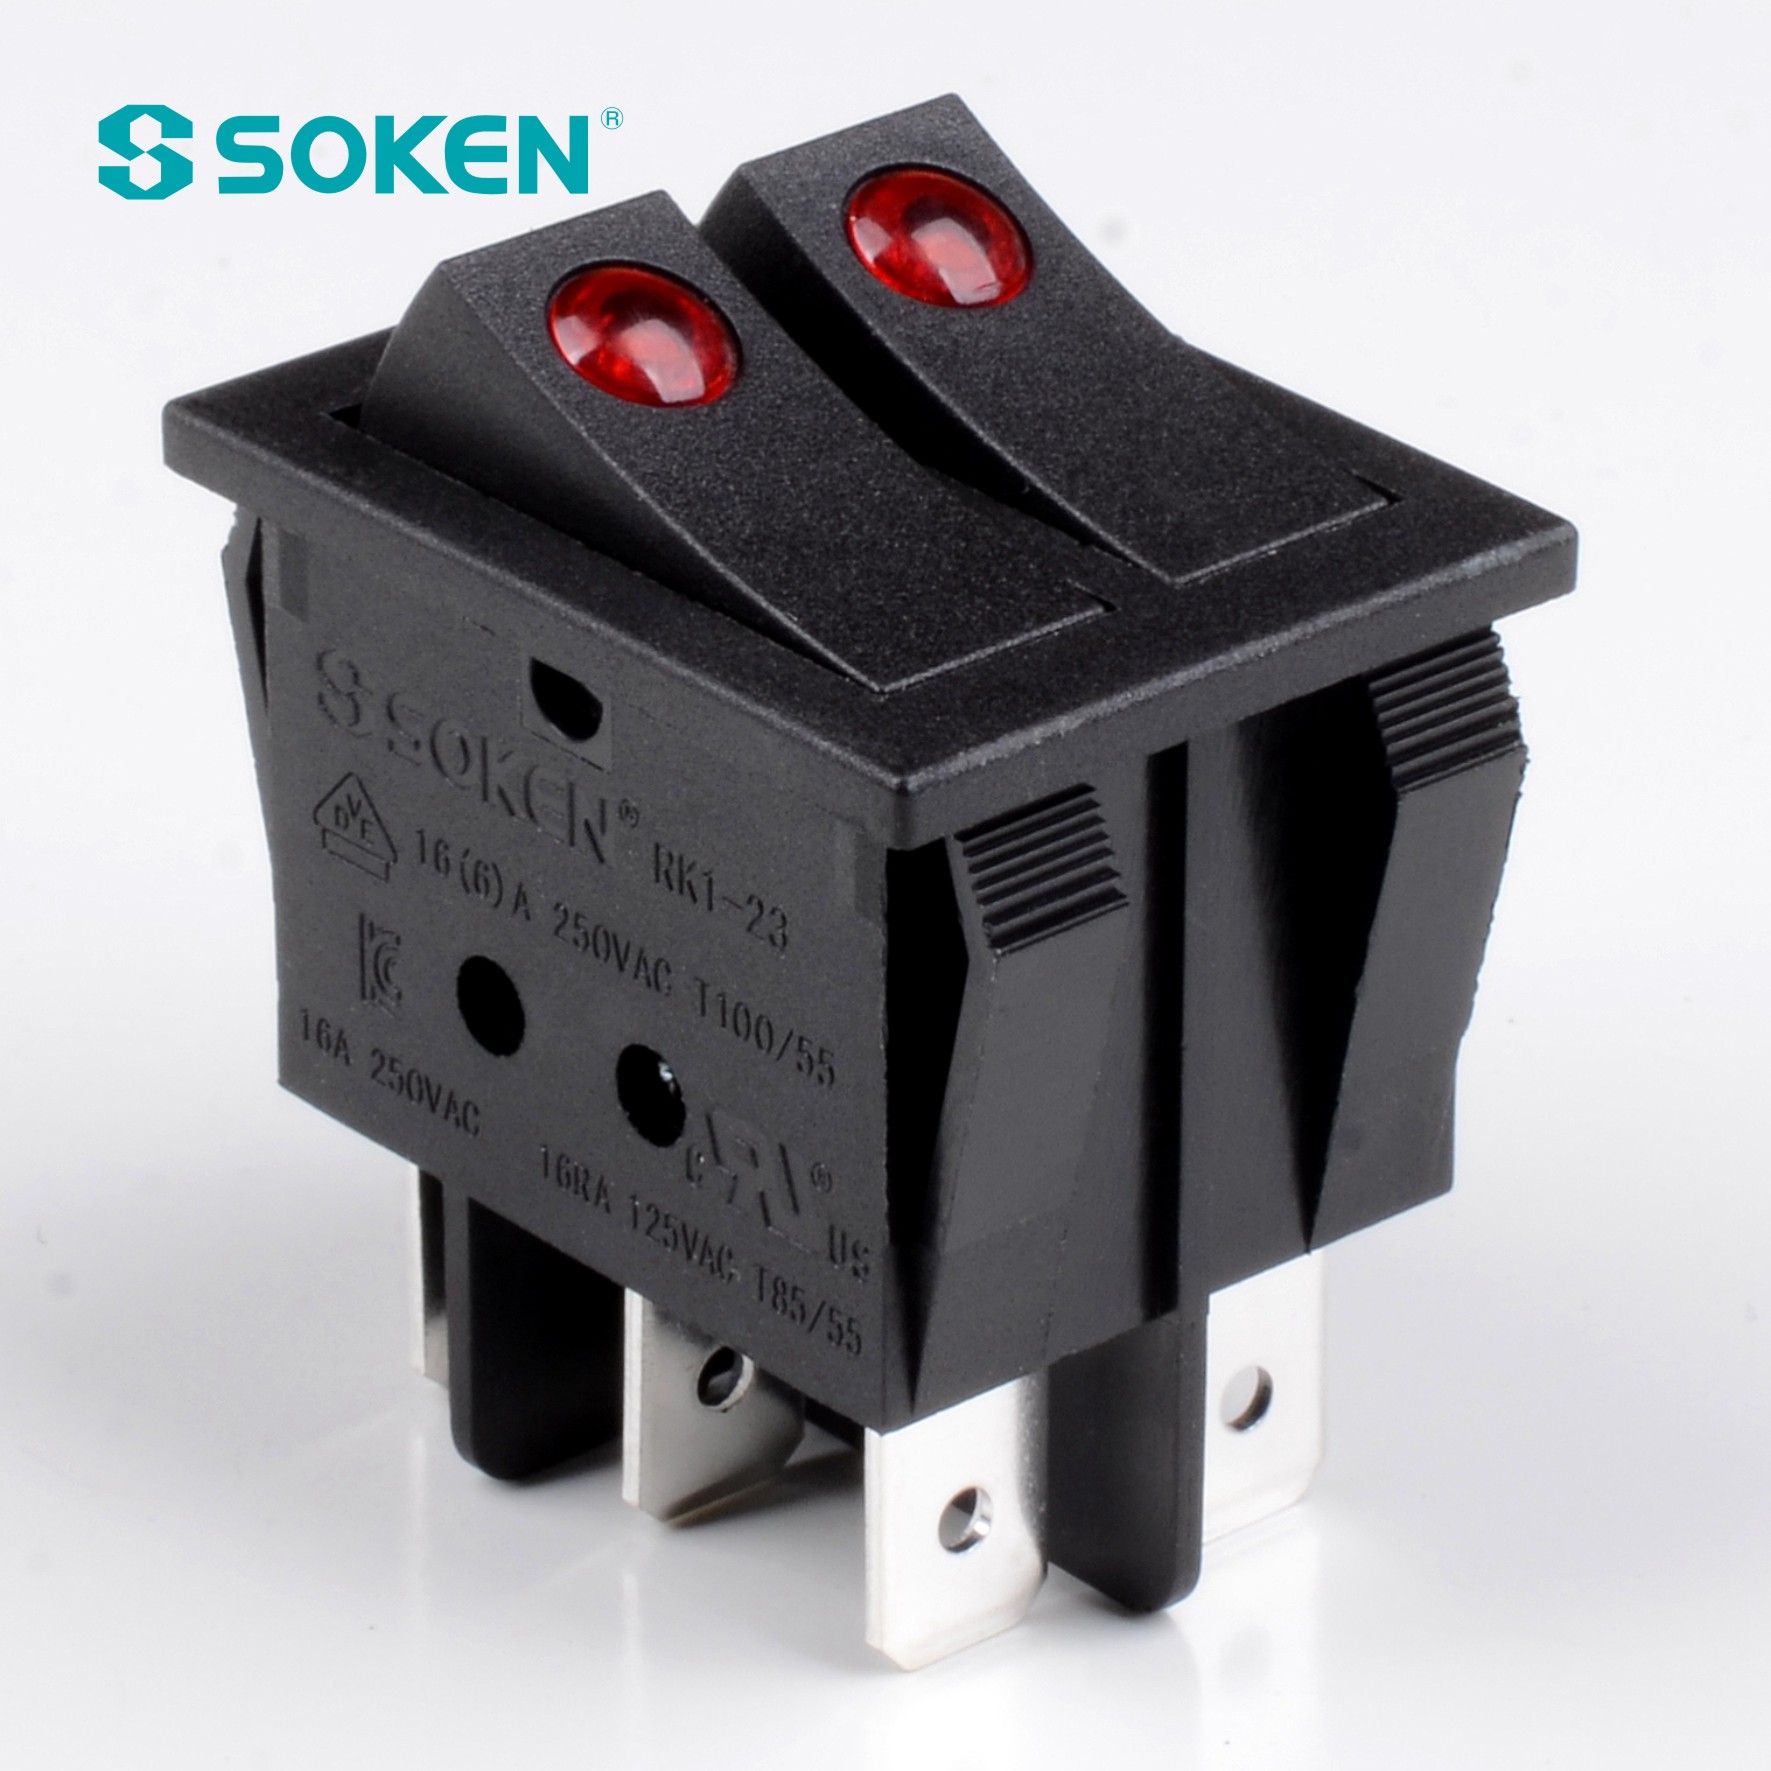 Soken Switch Double Rocker Switch T85 Twins බොත්තම